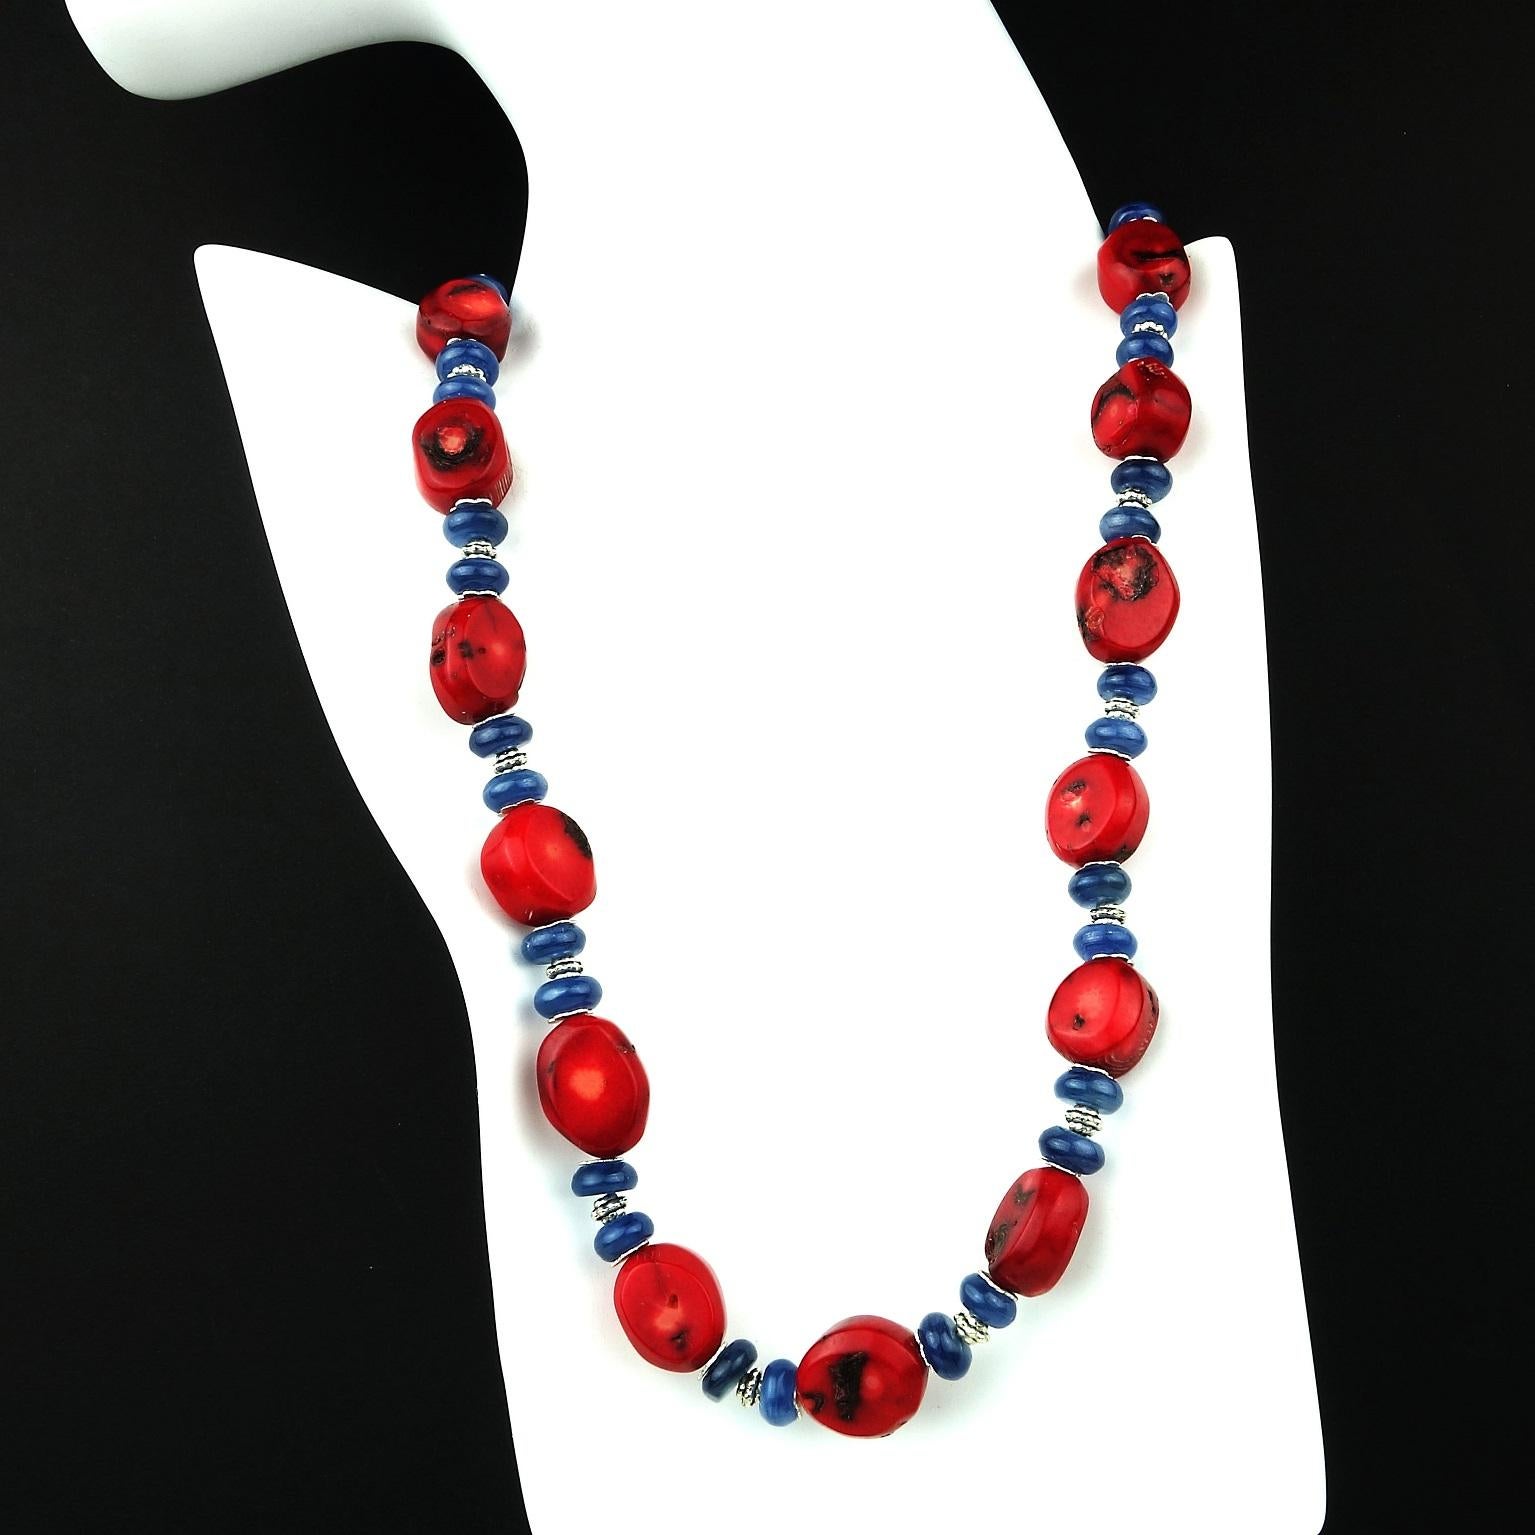 Diese einzigartige Halskette ist ein moderner Südwest-Look mit  Rote Koralle und blauer Kyanit, akzentuiert mit detaillierten silbernen Abstandshaltern und einem blauen Demortierit mit Sterlingsilberhakenverschluss.  Die tiefrote Bambuskoralle ist